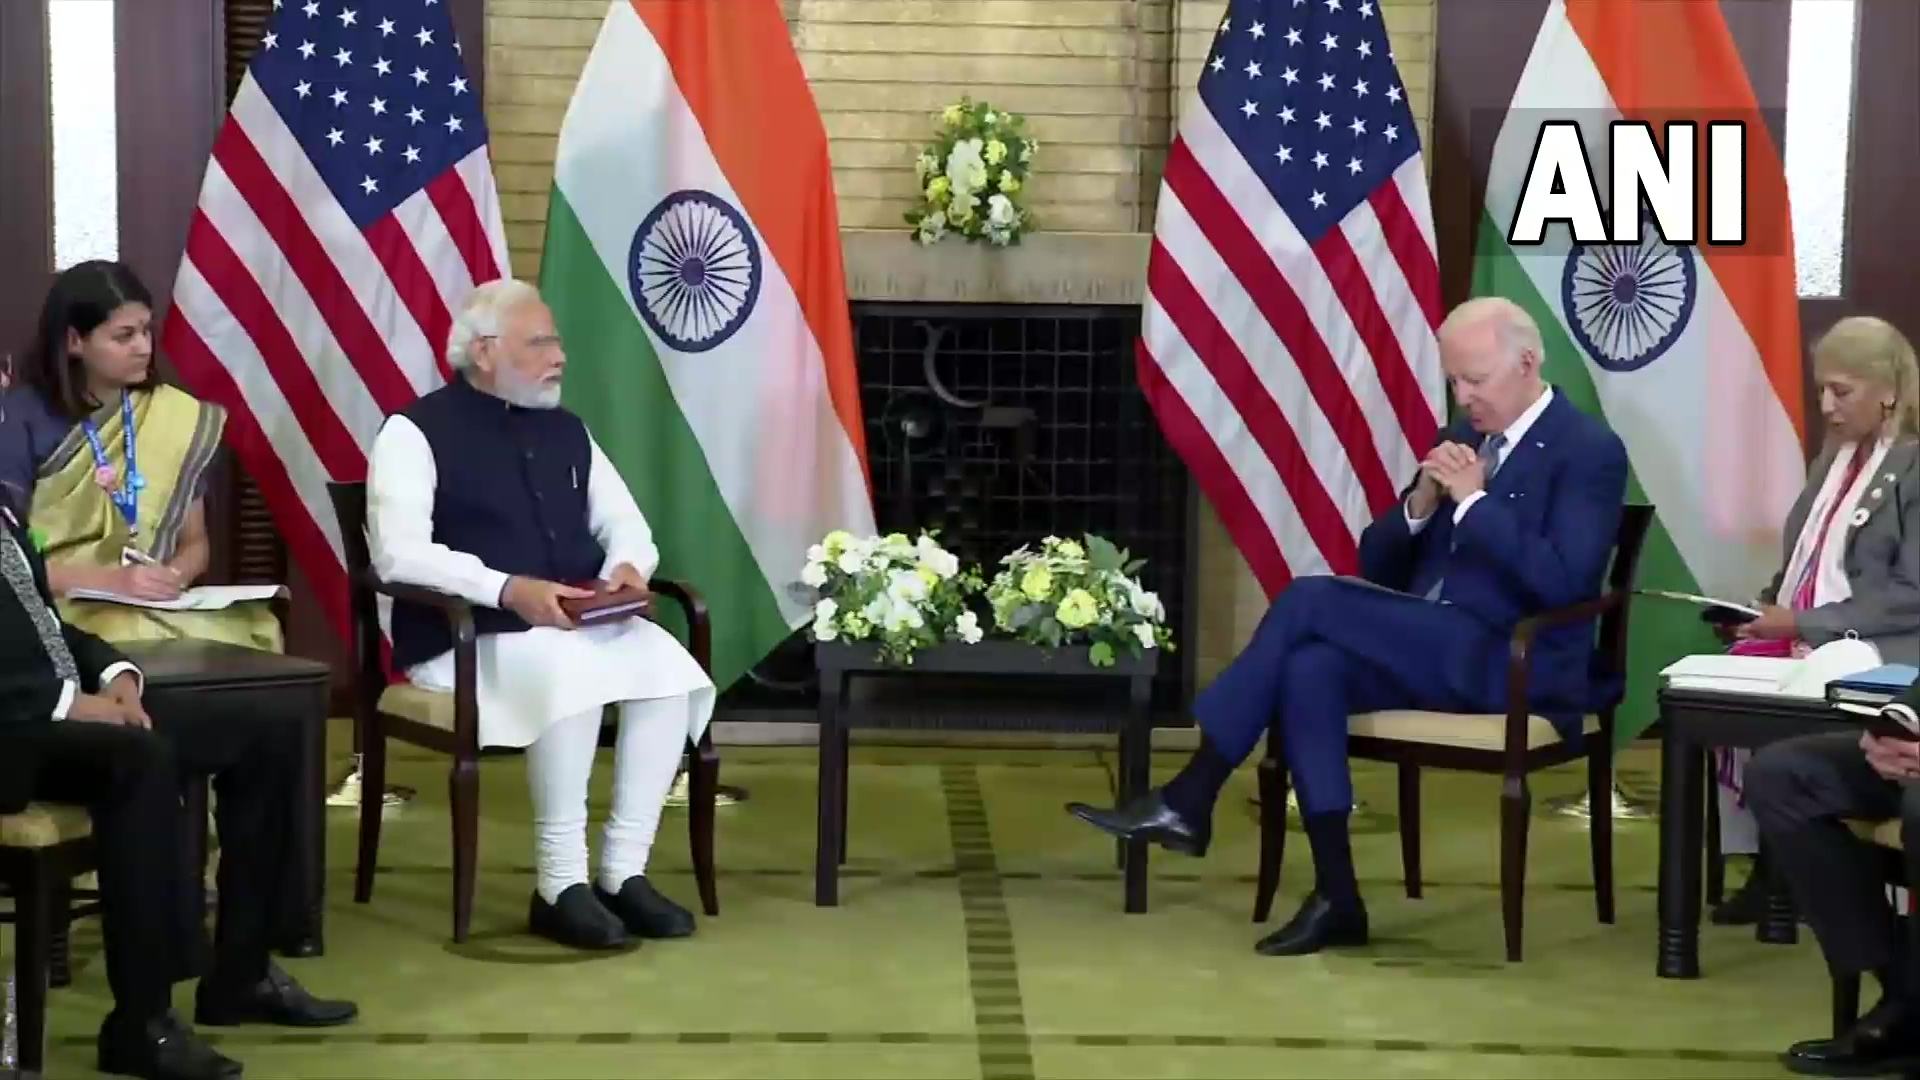 भारत-अमेरिका द्विपक्षीय वार्ता में बोले पीएम मोदी, भारत और अमेरिका की साझेदारी विश्वास की साझेदारी है